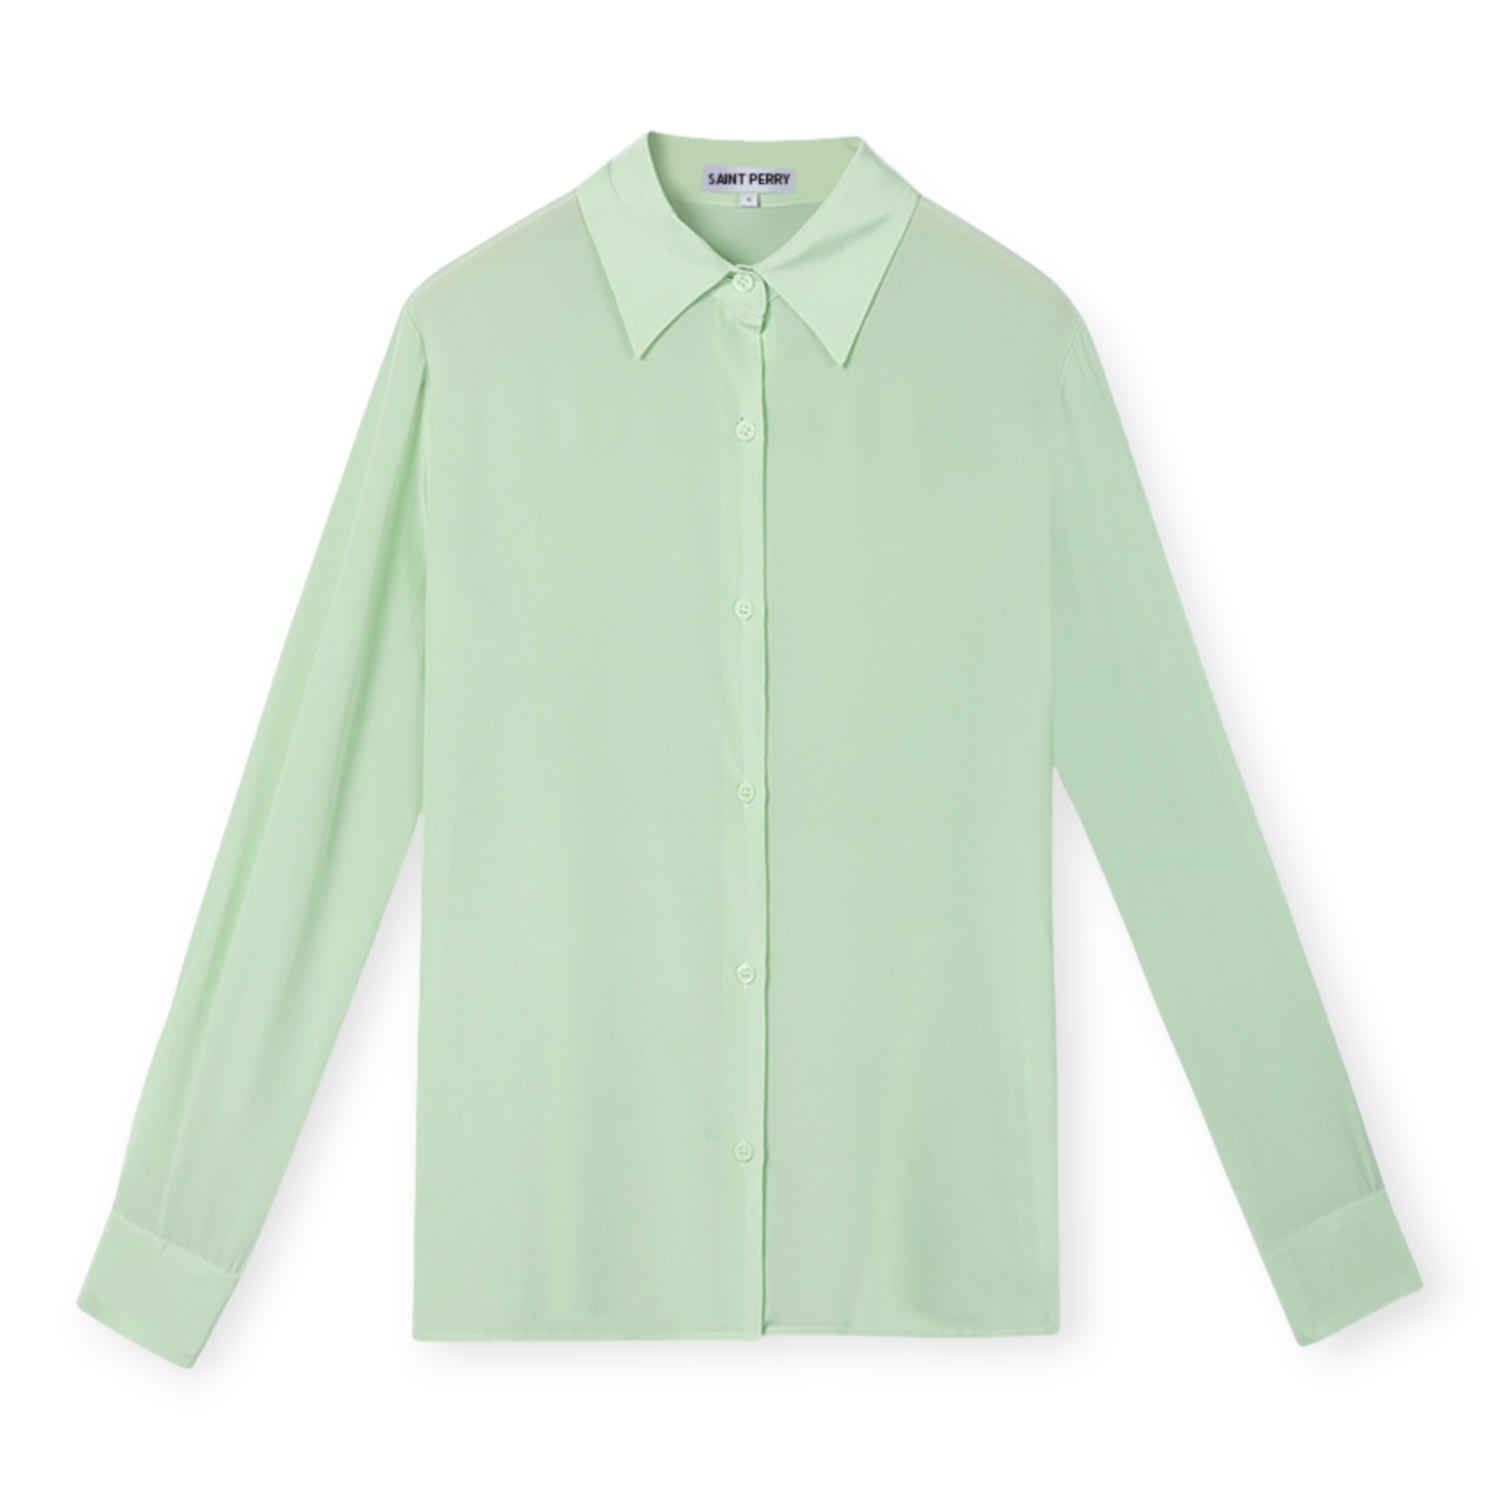 Men's Silk Shirt - Light Green Medium SAINT PERRY